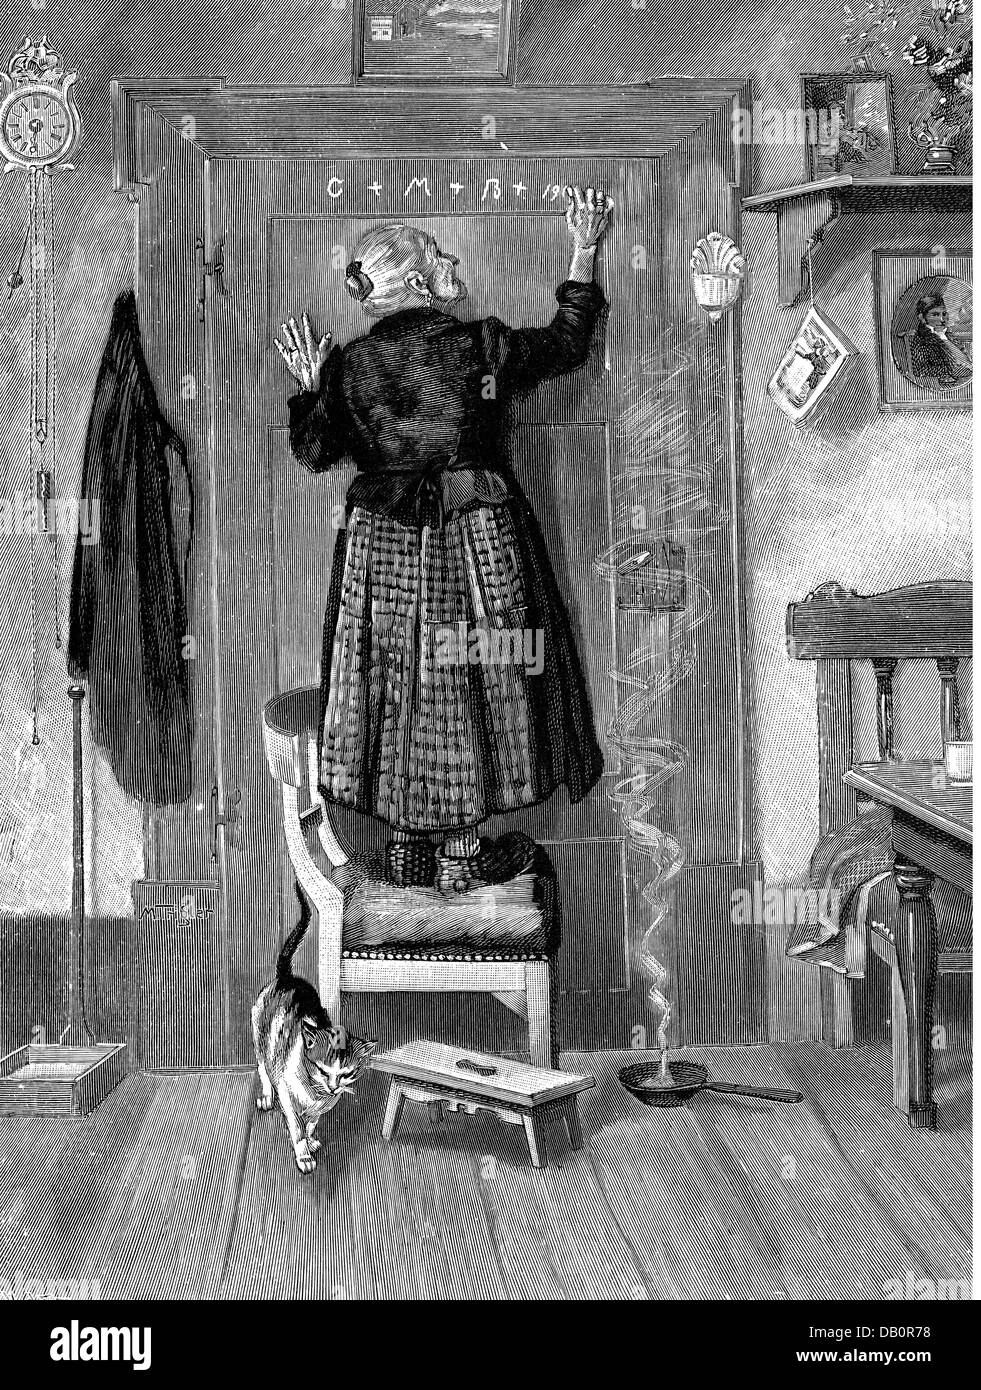 Festività, Capodanno, 'De neuen Jahrhunderts Anfang' (inizio di un nuovo secolo), dopo la pittura, di Martin Trigler (* 1867), incisione in legno, di H.Gedan, da: 'Daheim', volume 36, Lipsia, 1899 / 1900, diritti aggiuntivi-clearences-not available Foto Stock